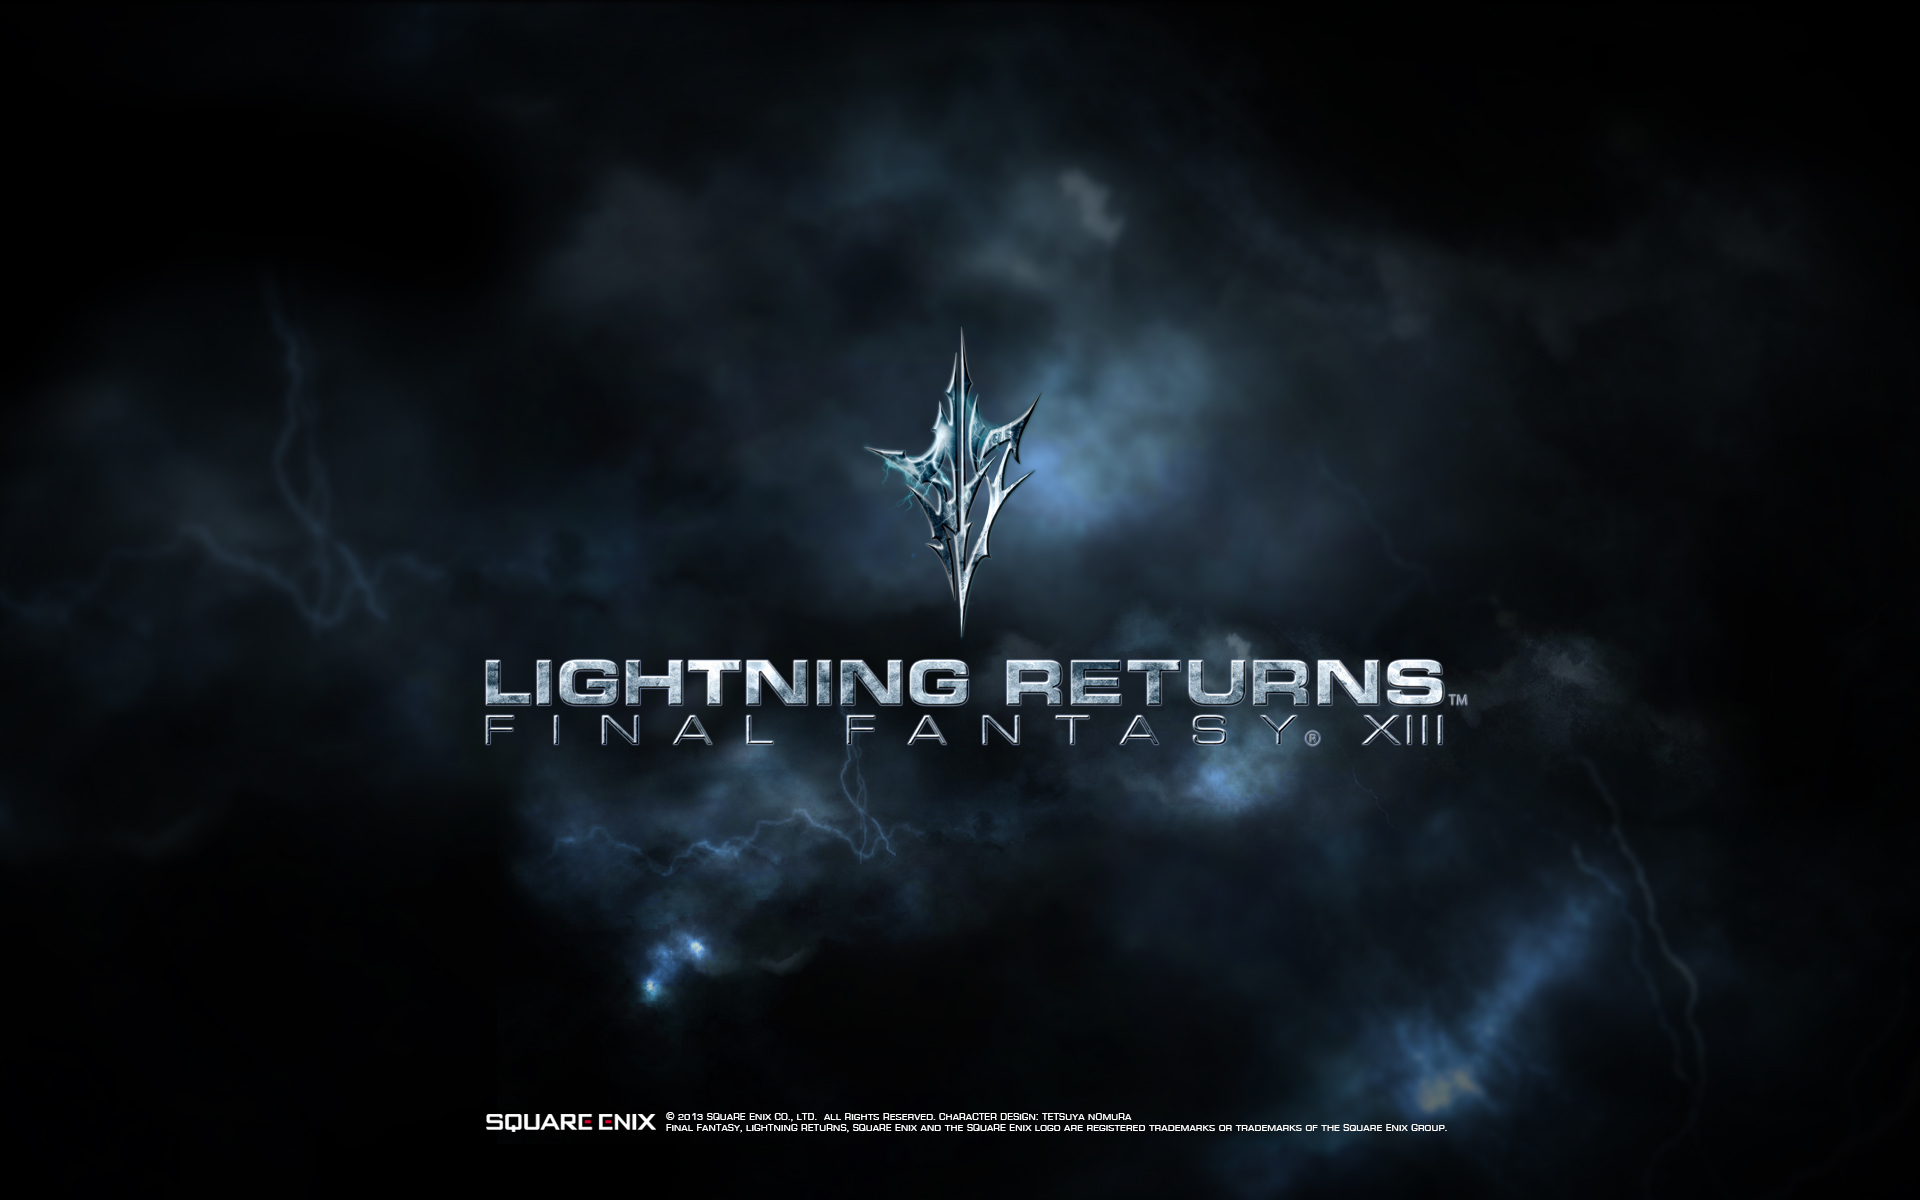 Lightning Returns Final Fantasy Xiii Wallpaper The